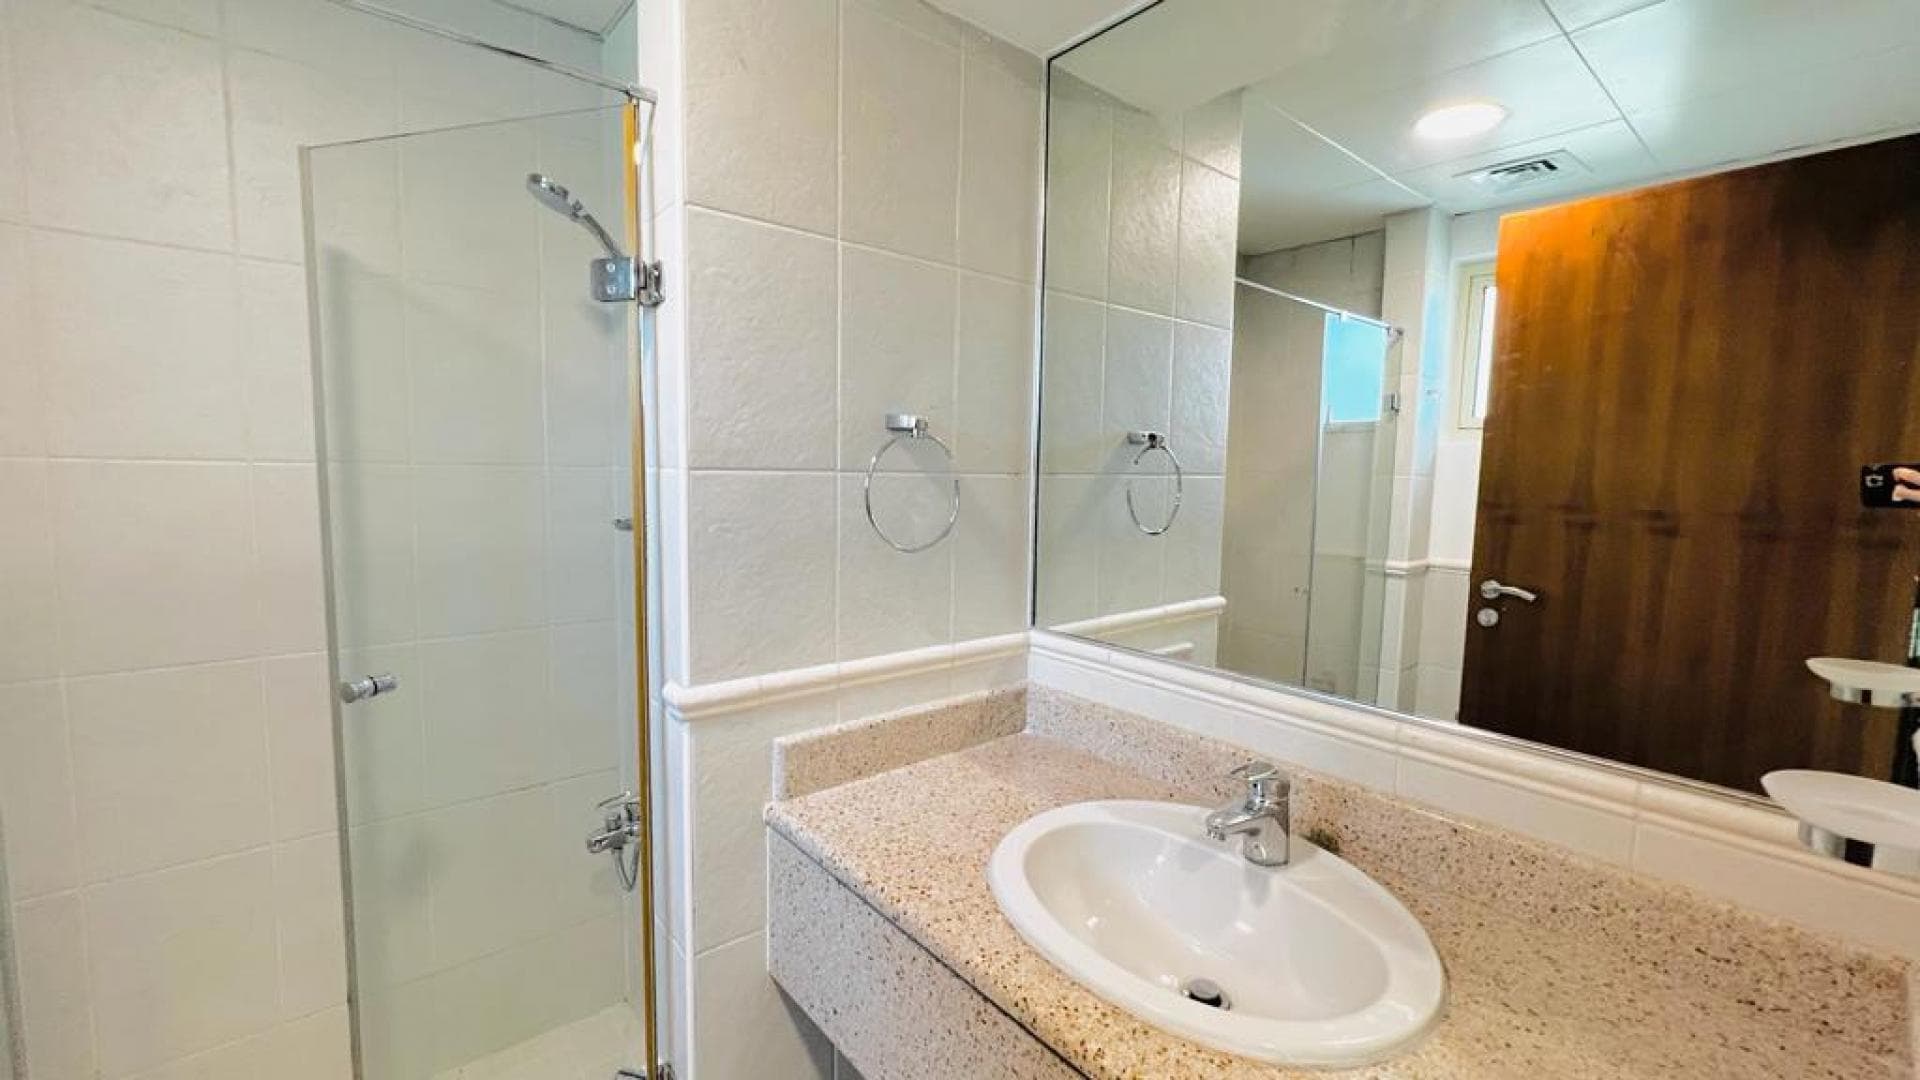 4 Bedroom Villa For Rent Al Thamam 13 Lp18938 2e11a60a1f569e00.jpeg